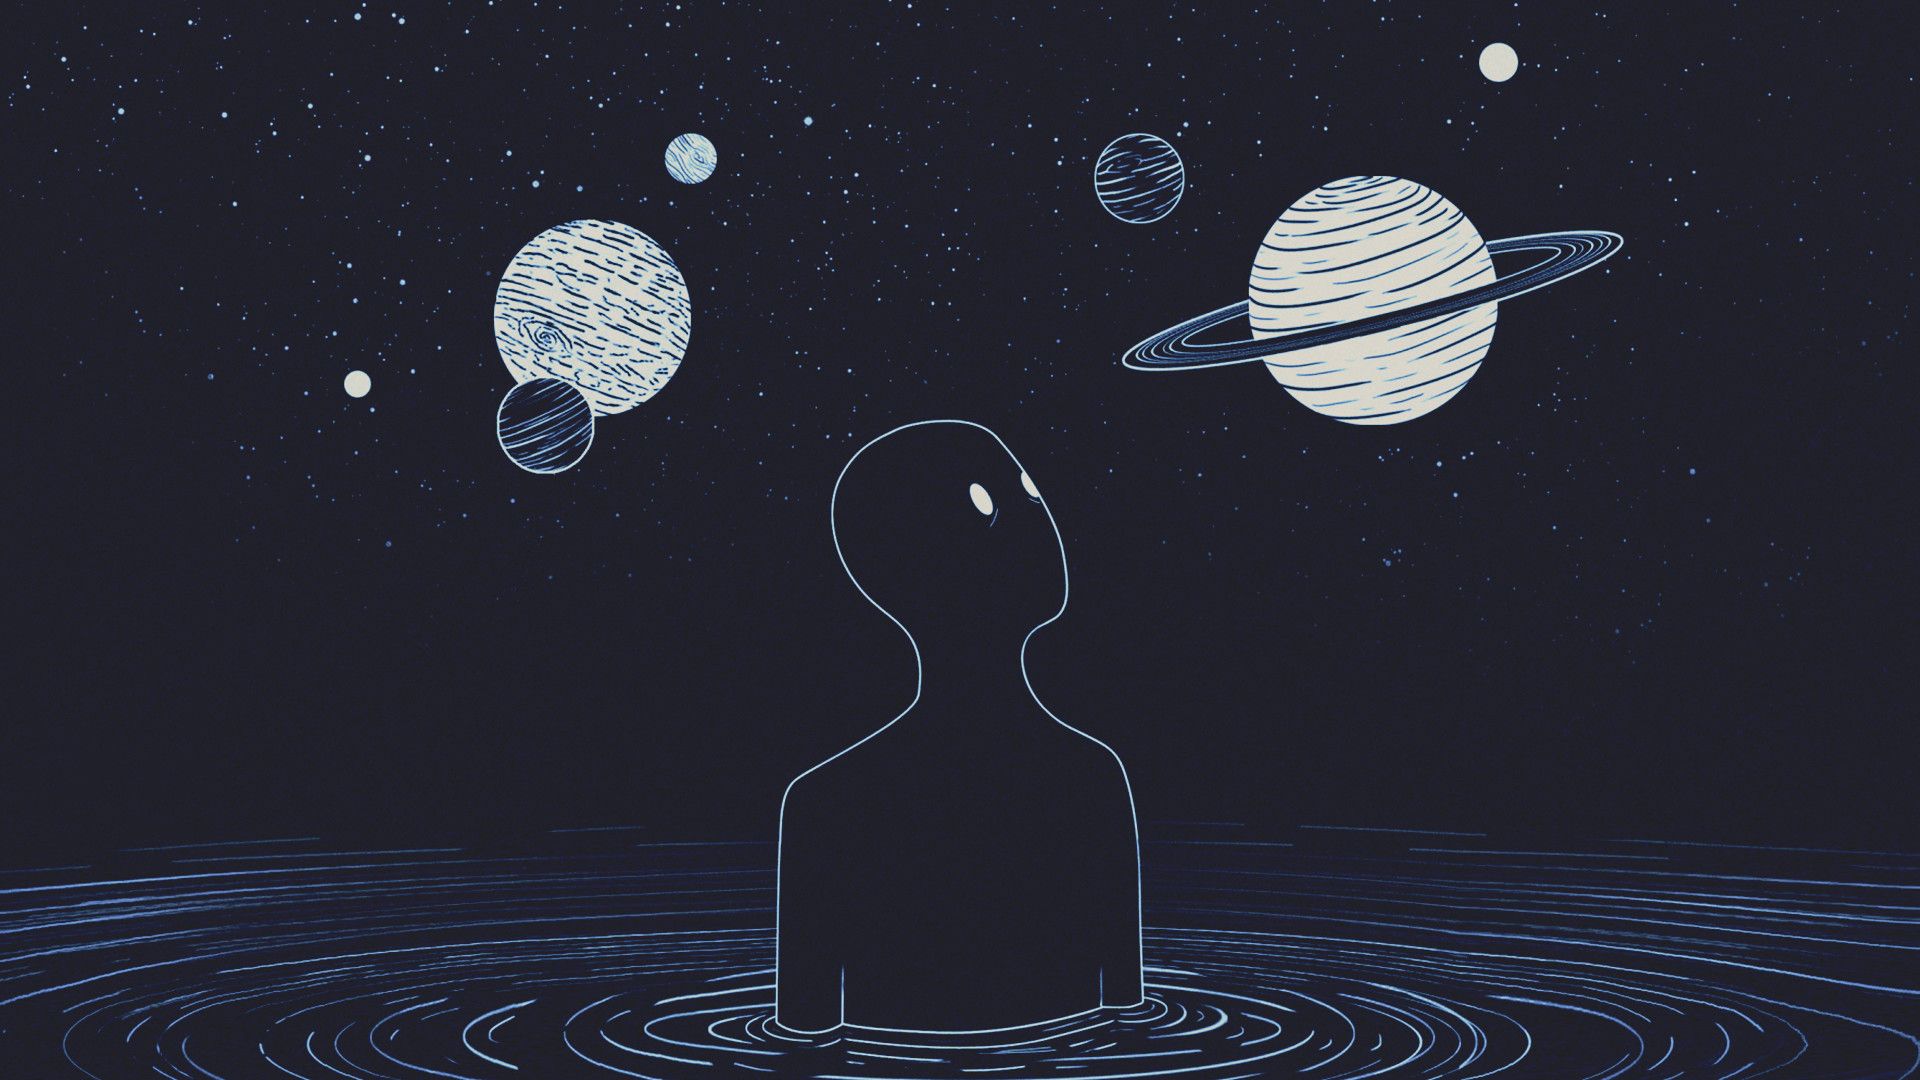 quaderno hd wallpaper,oggetto astronomico,pianeta,illustrazione,spazio,cielo